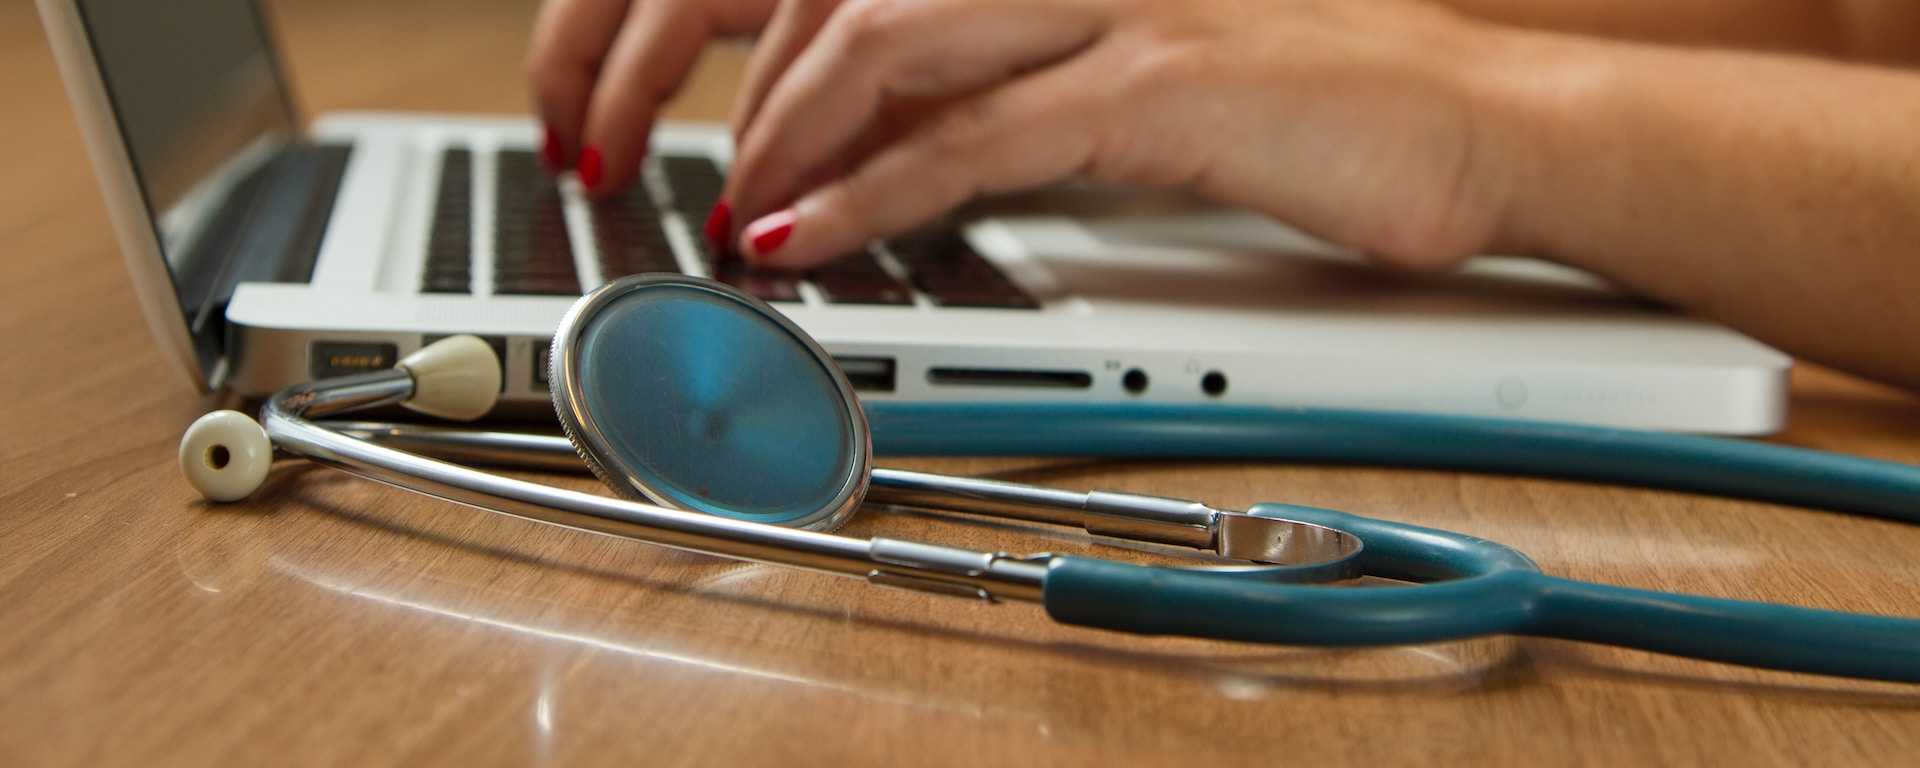 Votre certificat médical en ligne ou chez le médecin ?